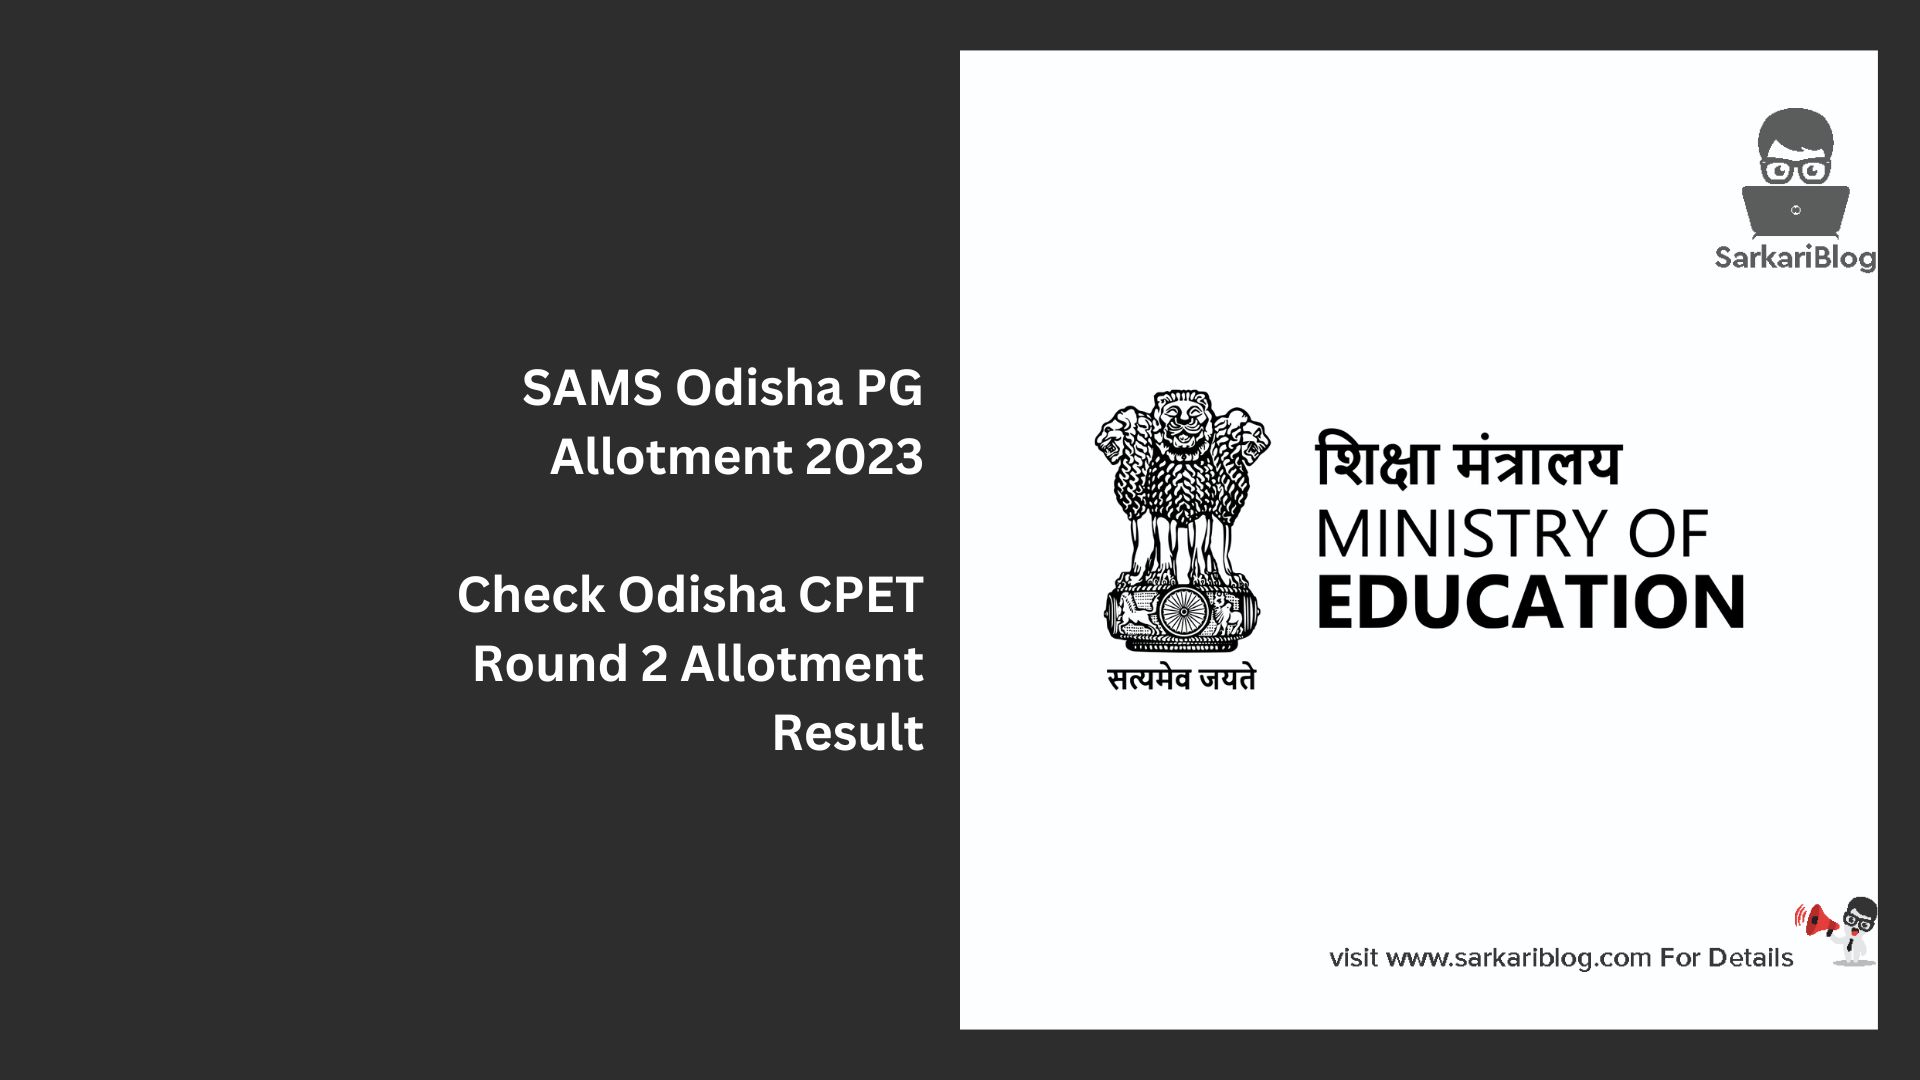 SAMS Odisha PG Allotment 2023